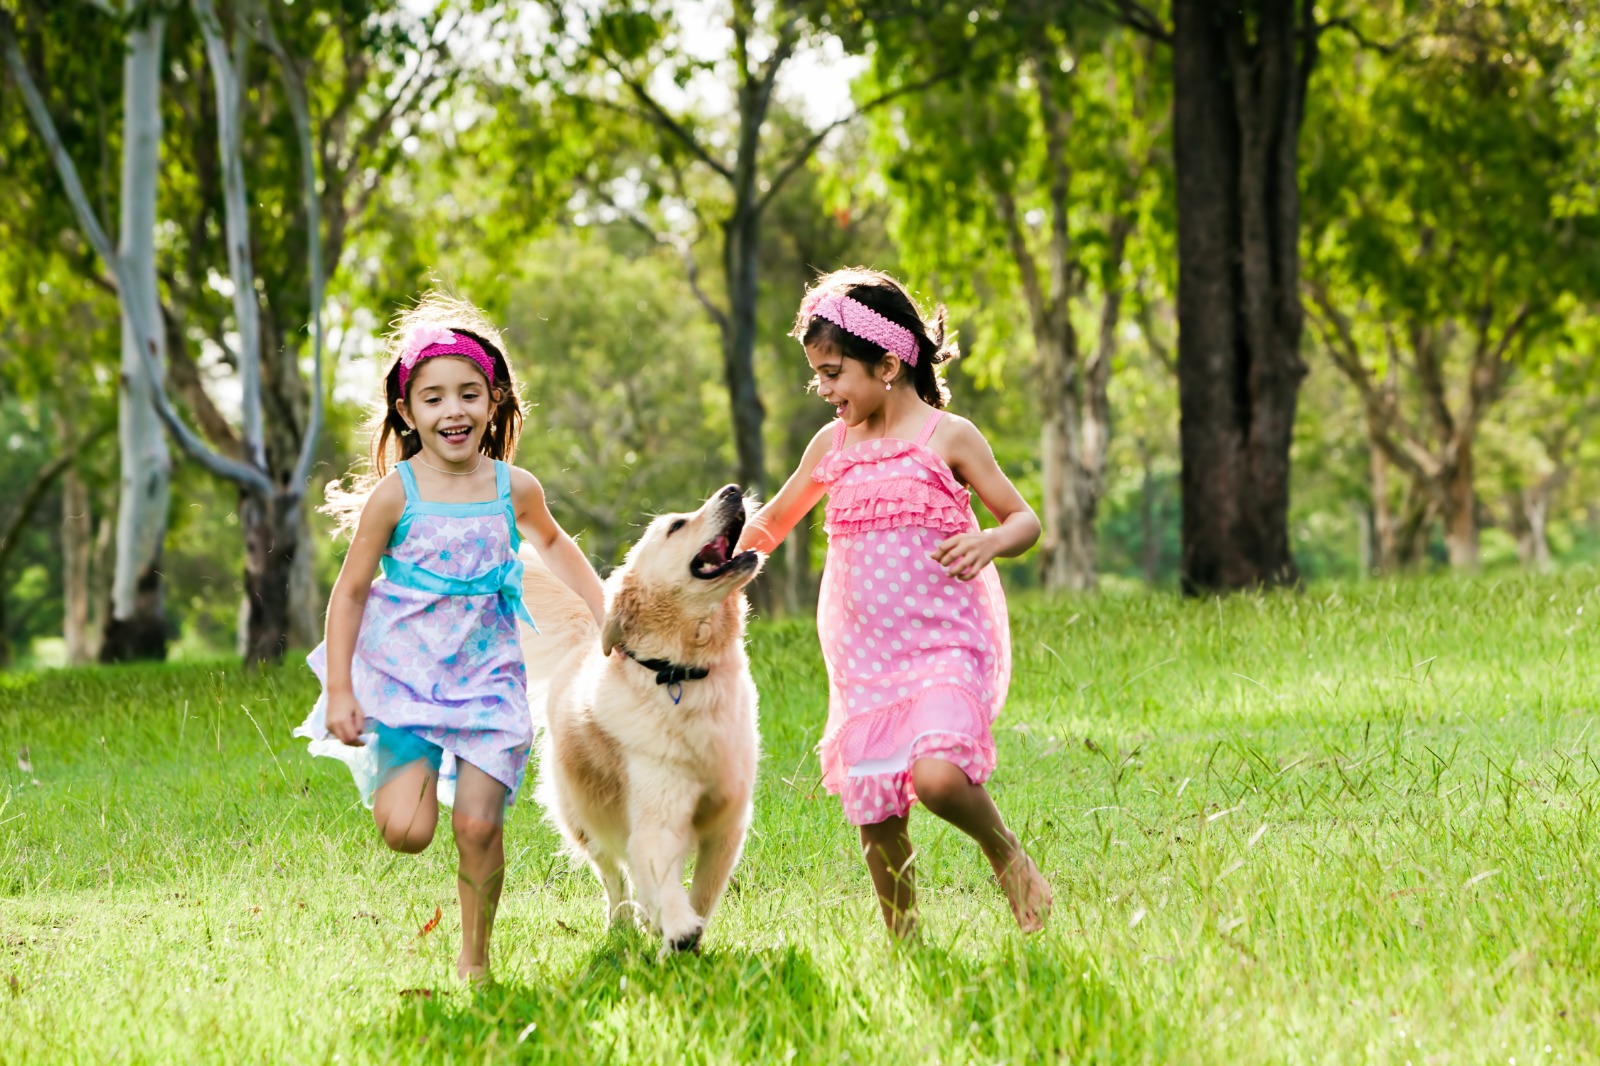 Cómo educar a los niños para una convivencia sana con animales